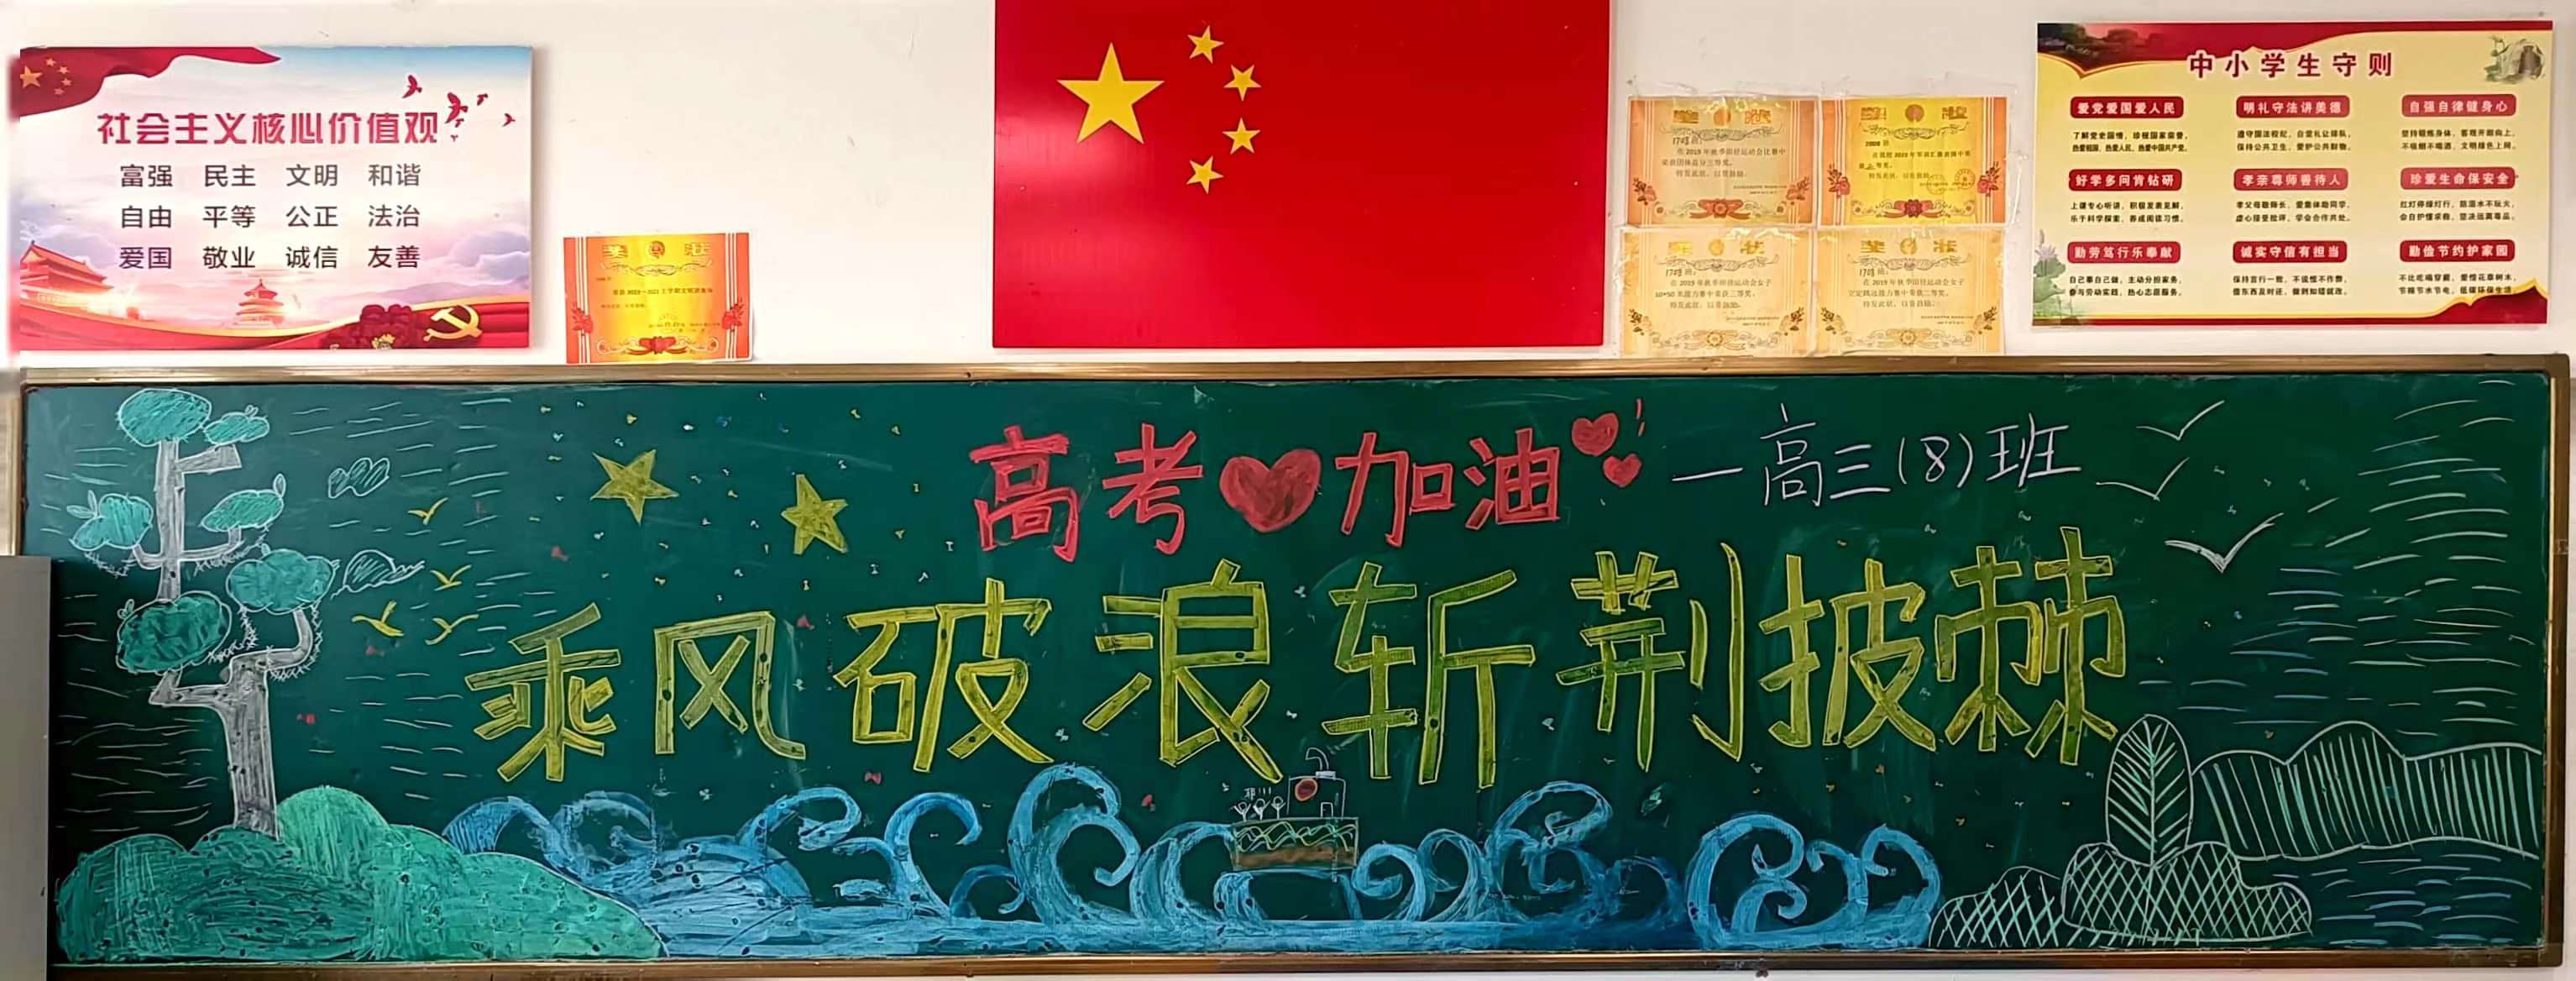 为梦想而战,郑州十中举行冲刺高考主题黑板报展示活动